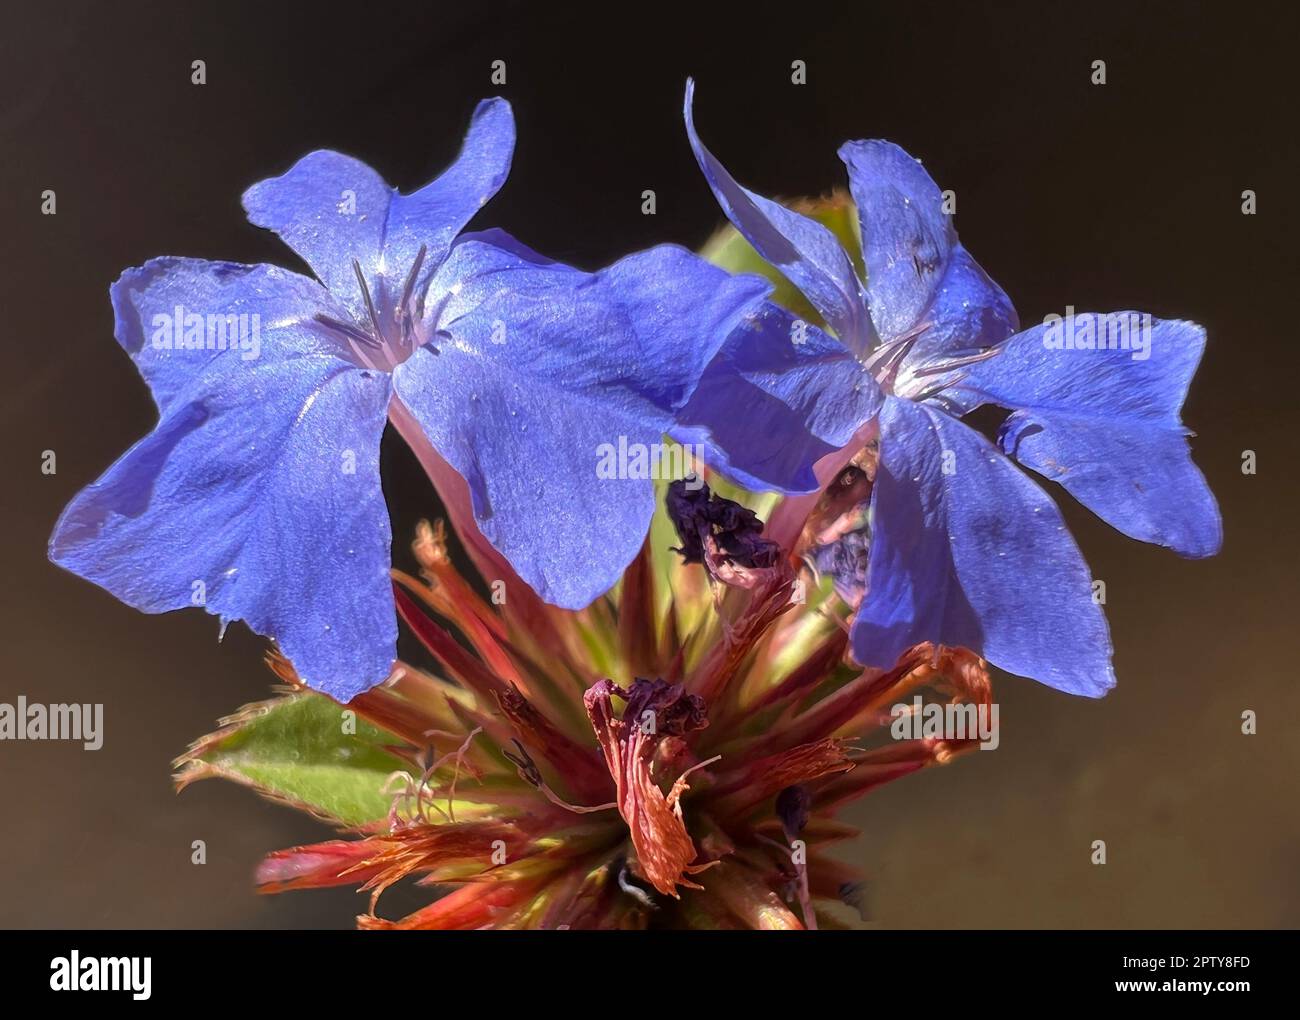 Bleiwurz, Cerastostigma, Wiimottiana ist eine wichtige Heilpflanze und eine Blume mit blauen Blueten. Cerastostigma Wiimottiana Leadwort,, es un importan Foto de stock